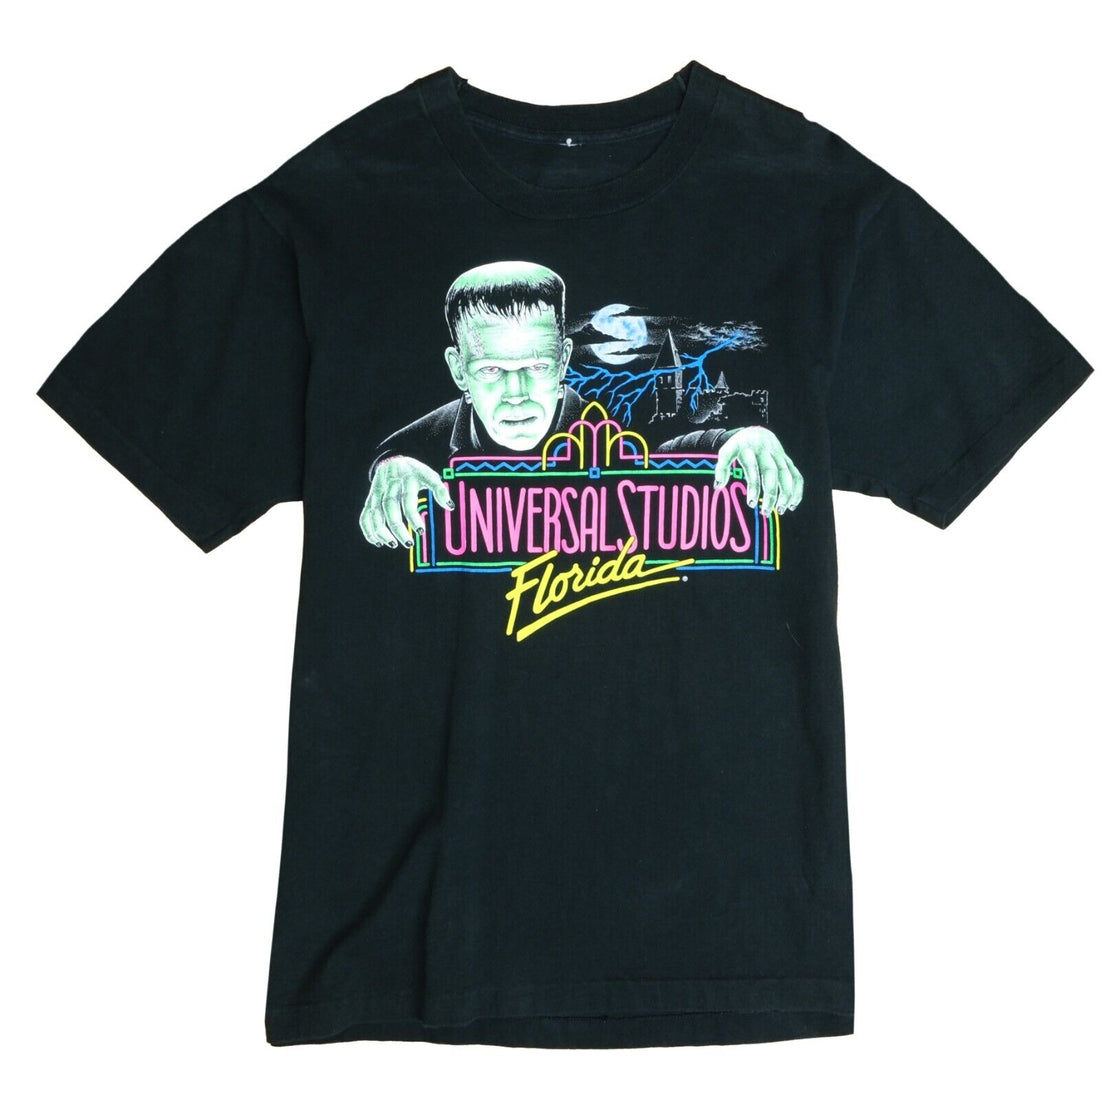 Vintage Frankenstein Universal Studios Florida T-Shirt Size Large 90s